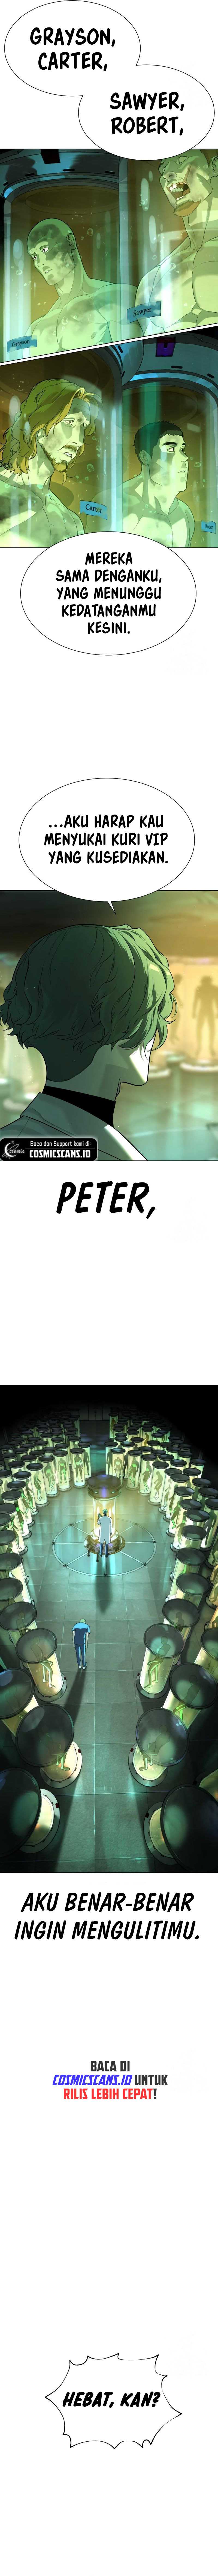 Killer Peter Chapter 16